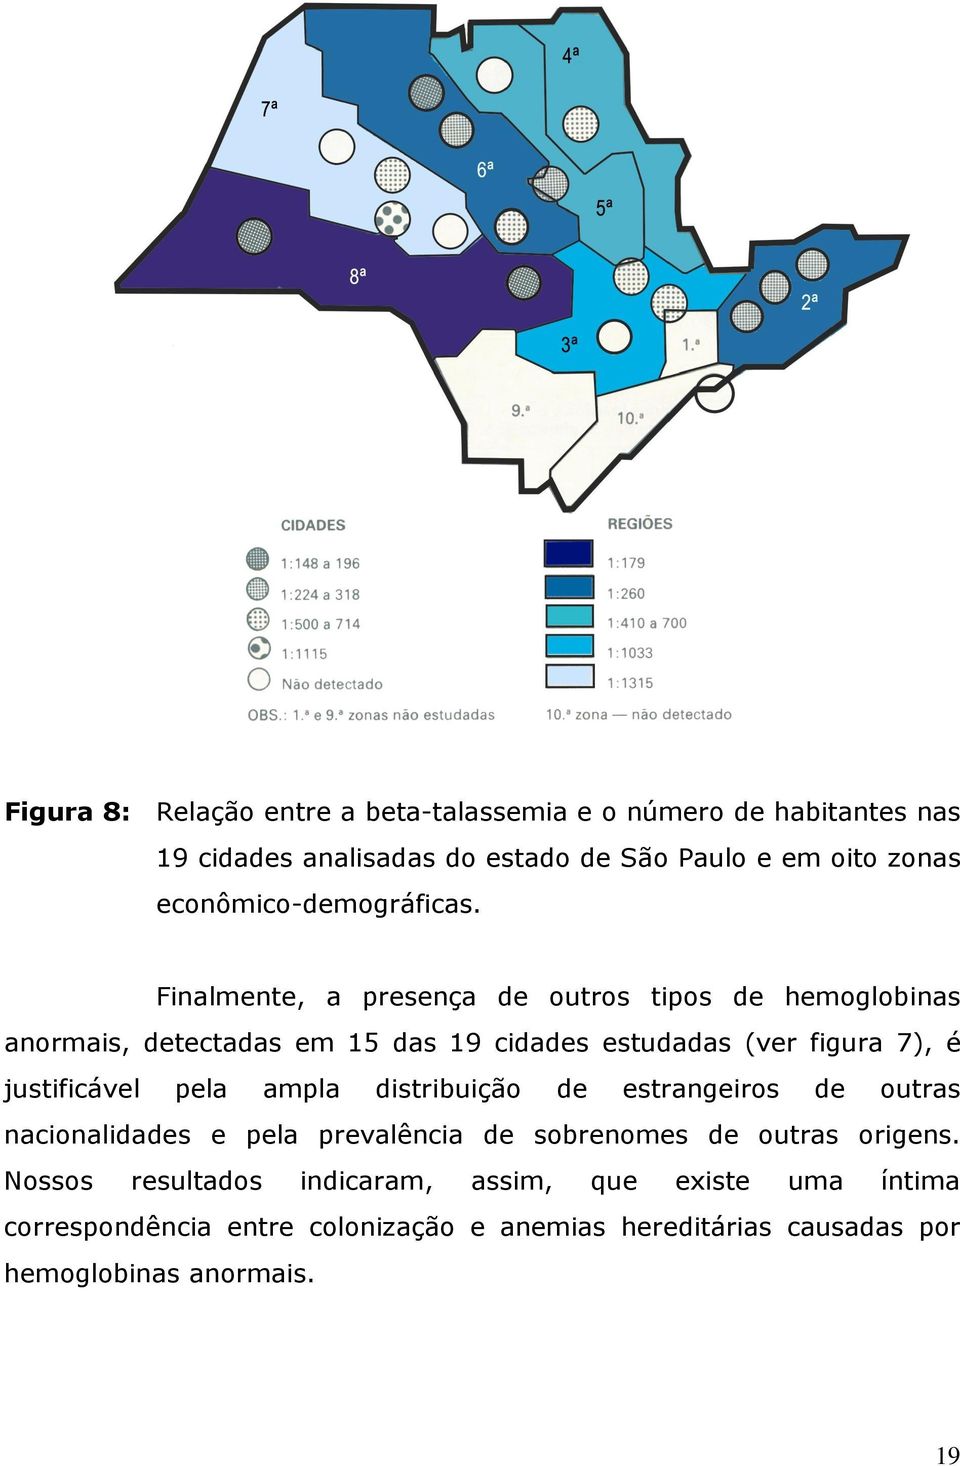 Finalmente, a presença de outros tipos de hemoglobinas anormais, detectadas em 15 das 19 cidades estudadas (ver figura 7), é justificável